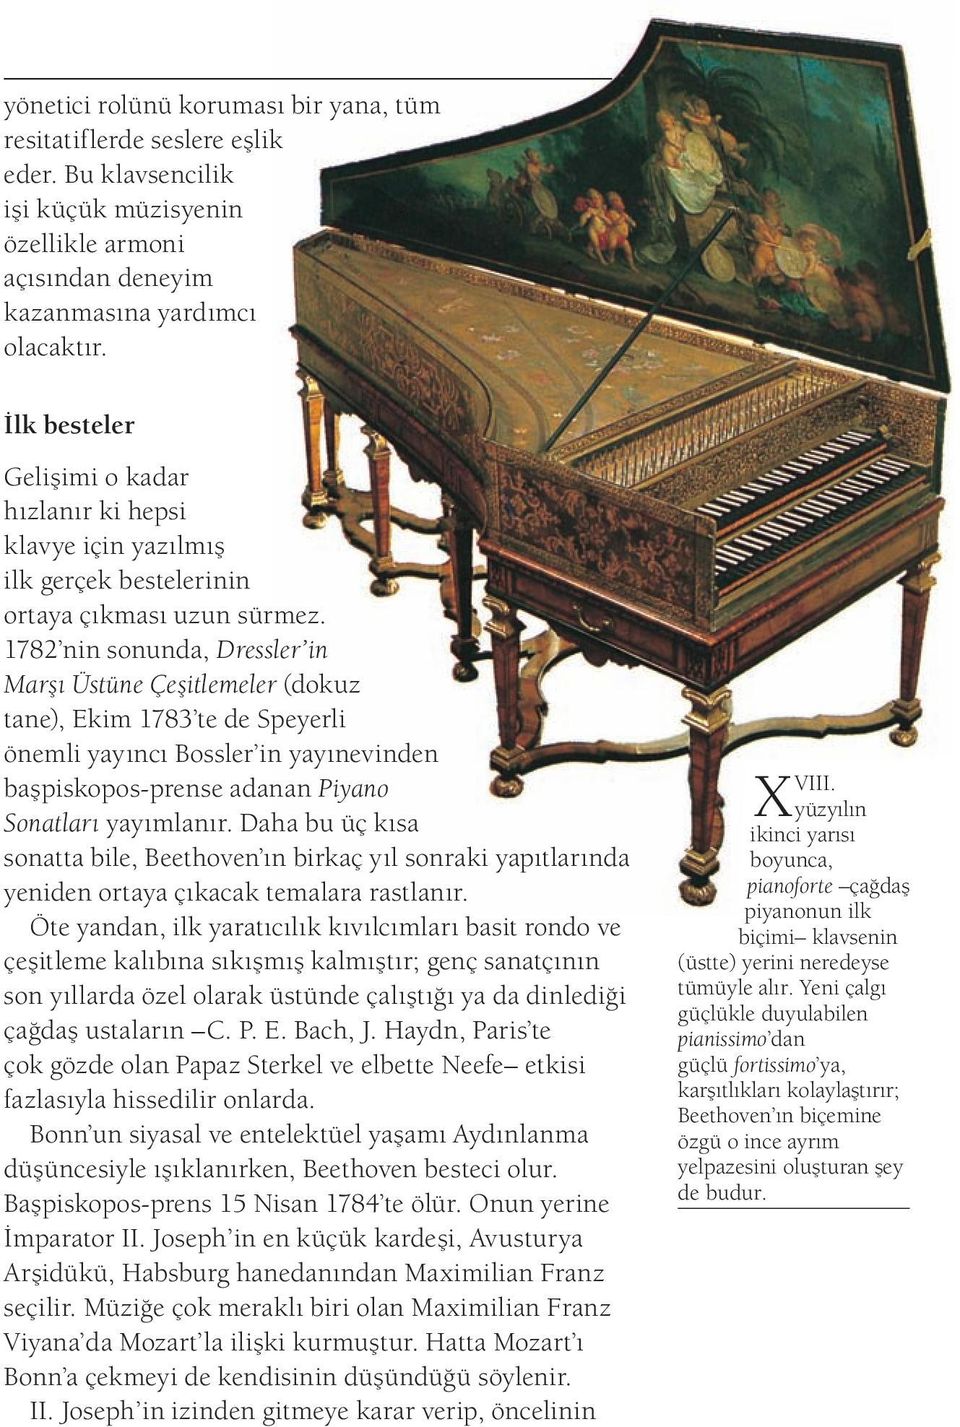 1782 nin sonunda, Dressler in Marşı Üstüne Çeşitlemeler (dokuz tane), Ekim 1783 te de Speyerli önemli yayıncı Bossler in yayınevinden başpiskopos-prense adanan Piyano Sonatları yayımlanır.